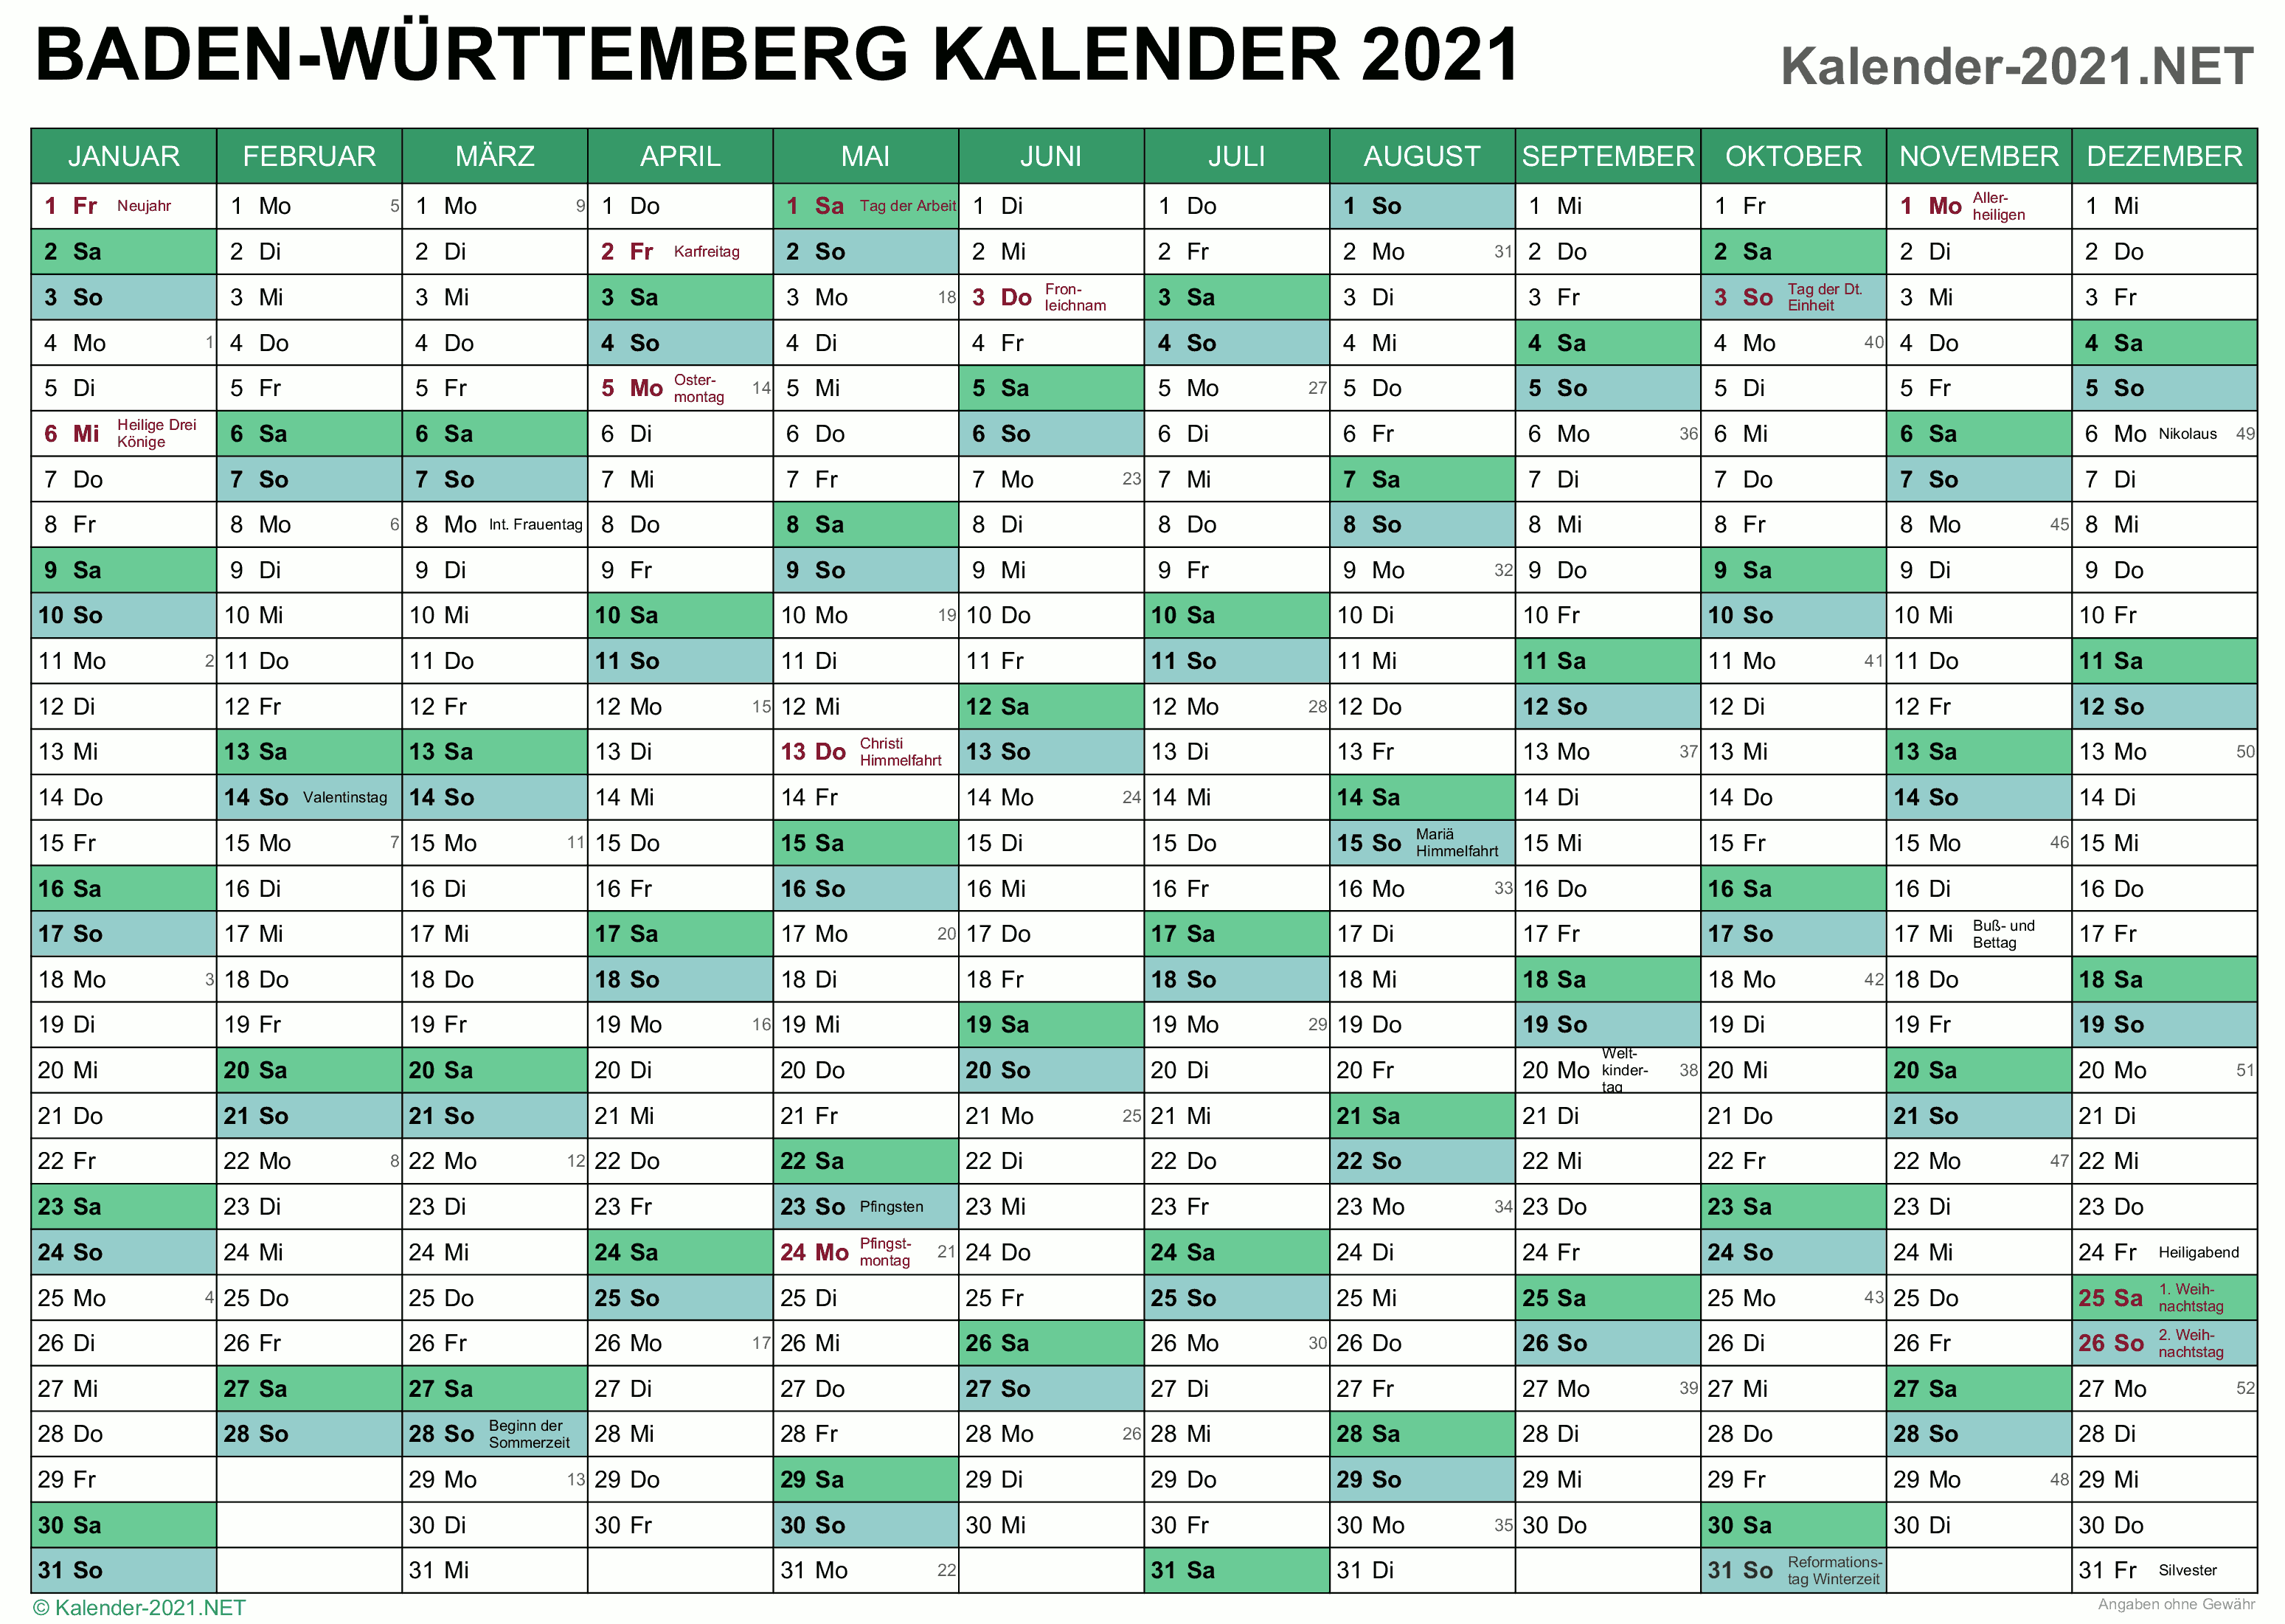 Ferien Bw 2021 : Ferien Baden Wurttemberg 2020 2021 - Den ...